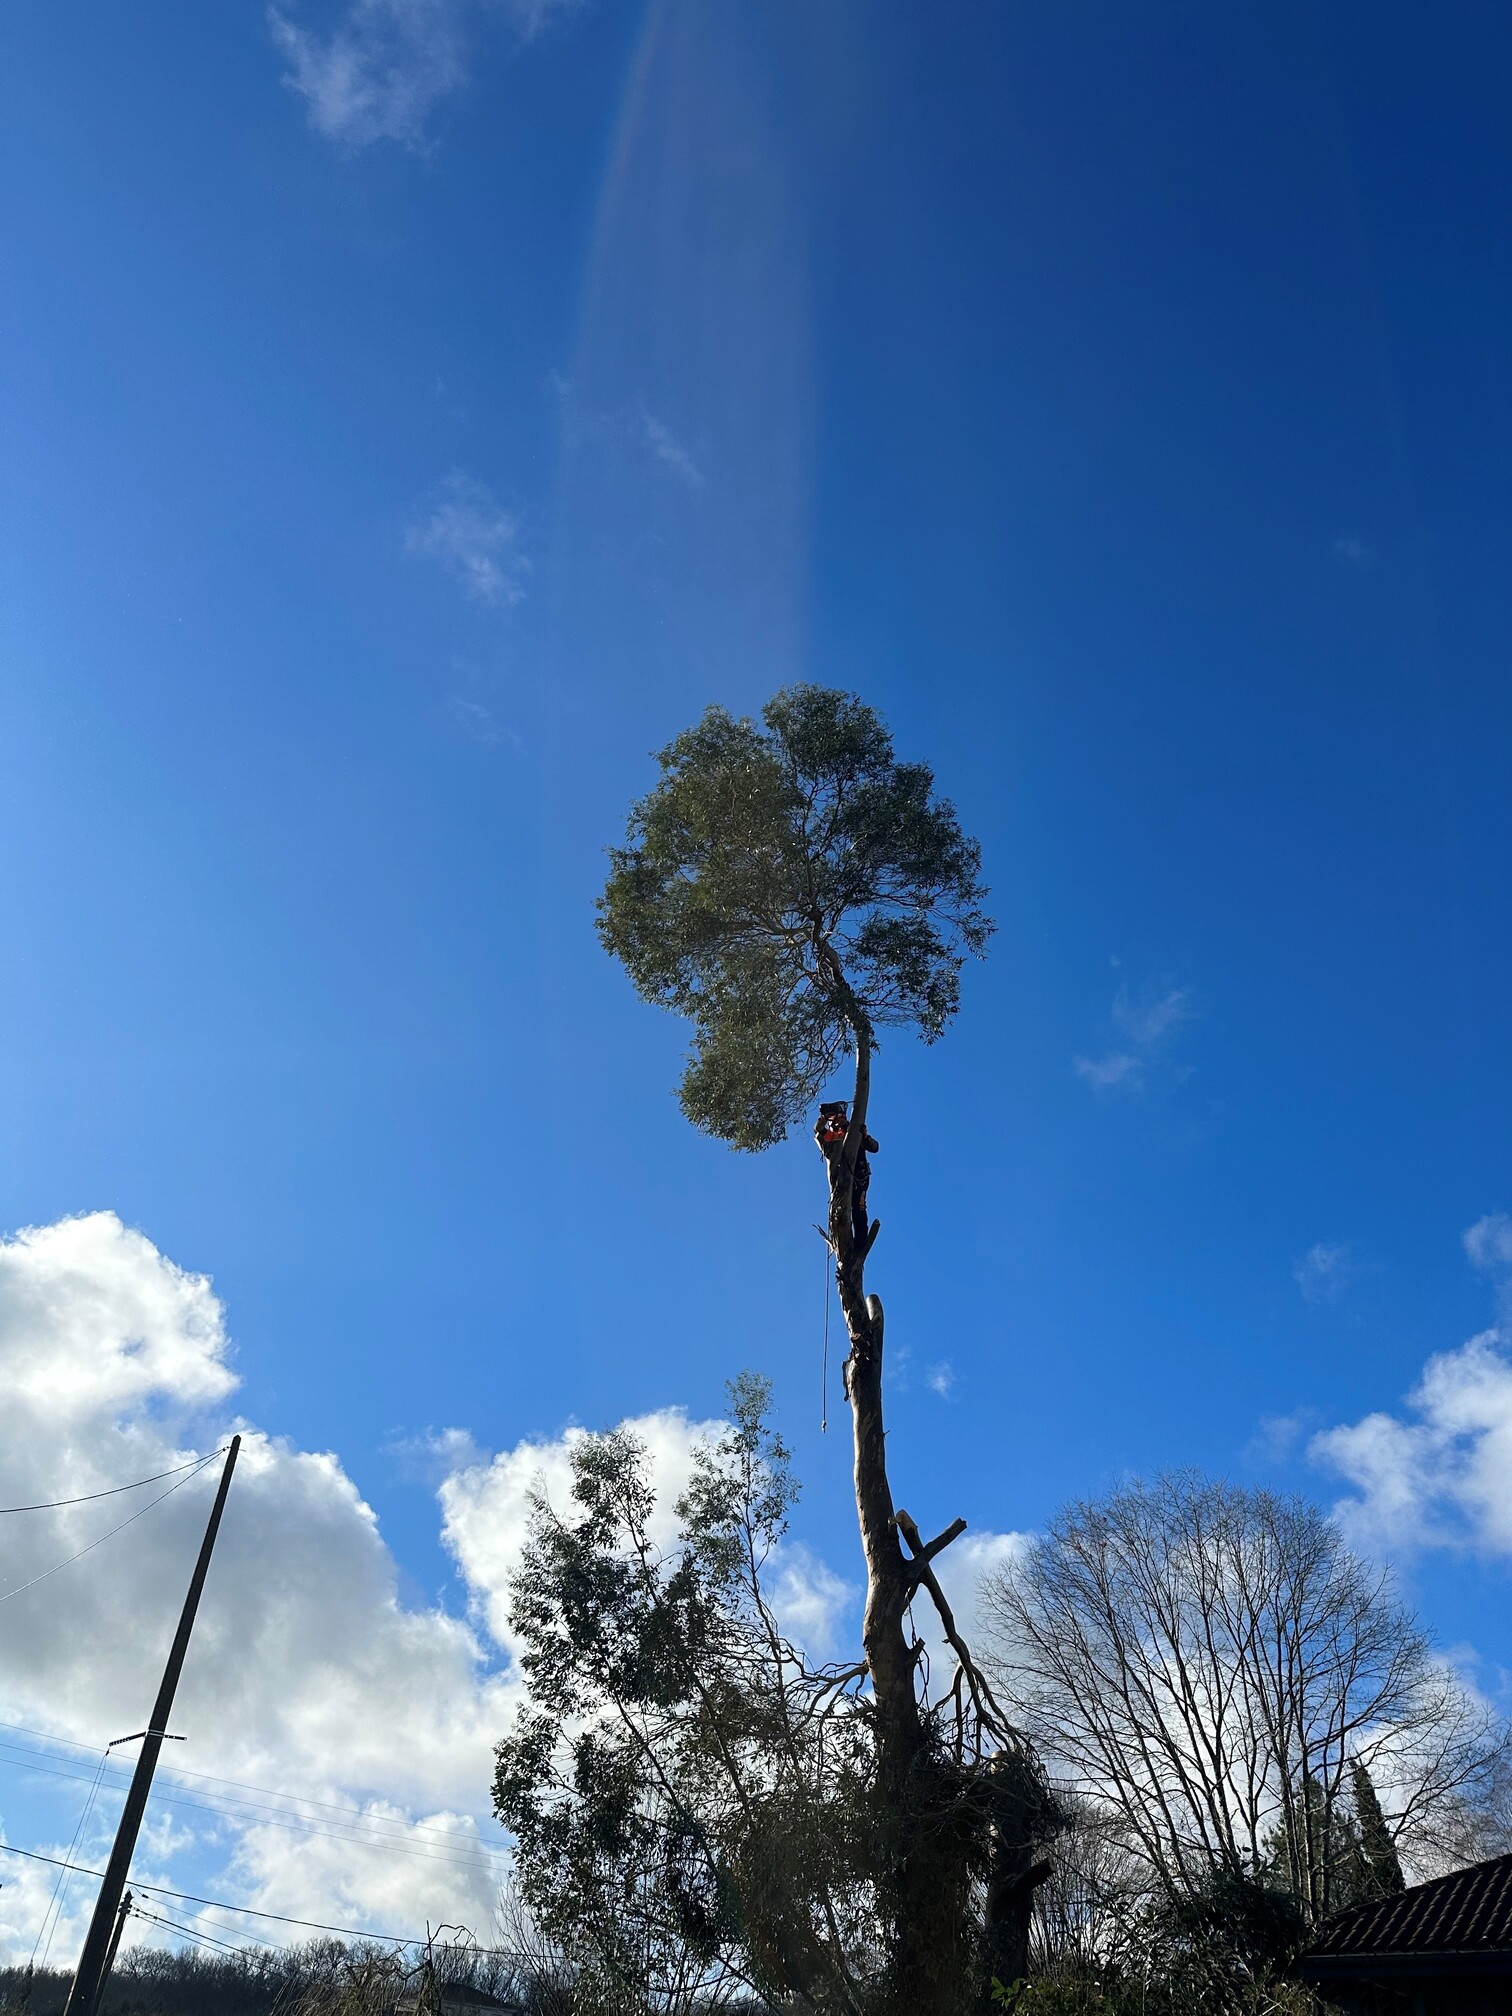 Abattage d’un eucalyptus à Marseillan (65350) à proximité de Tarbes